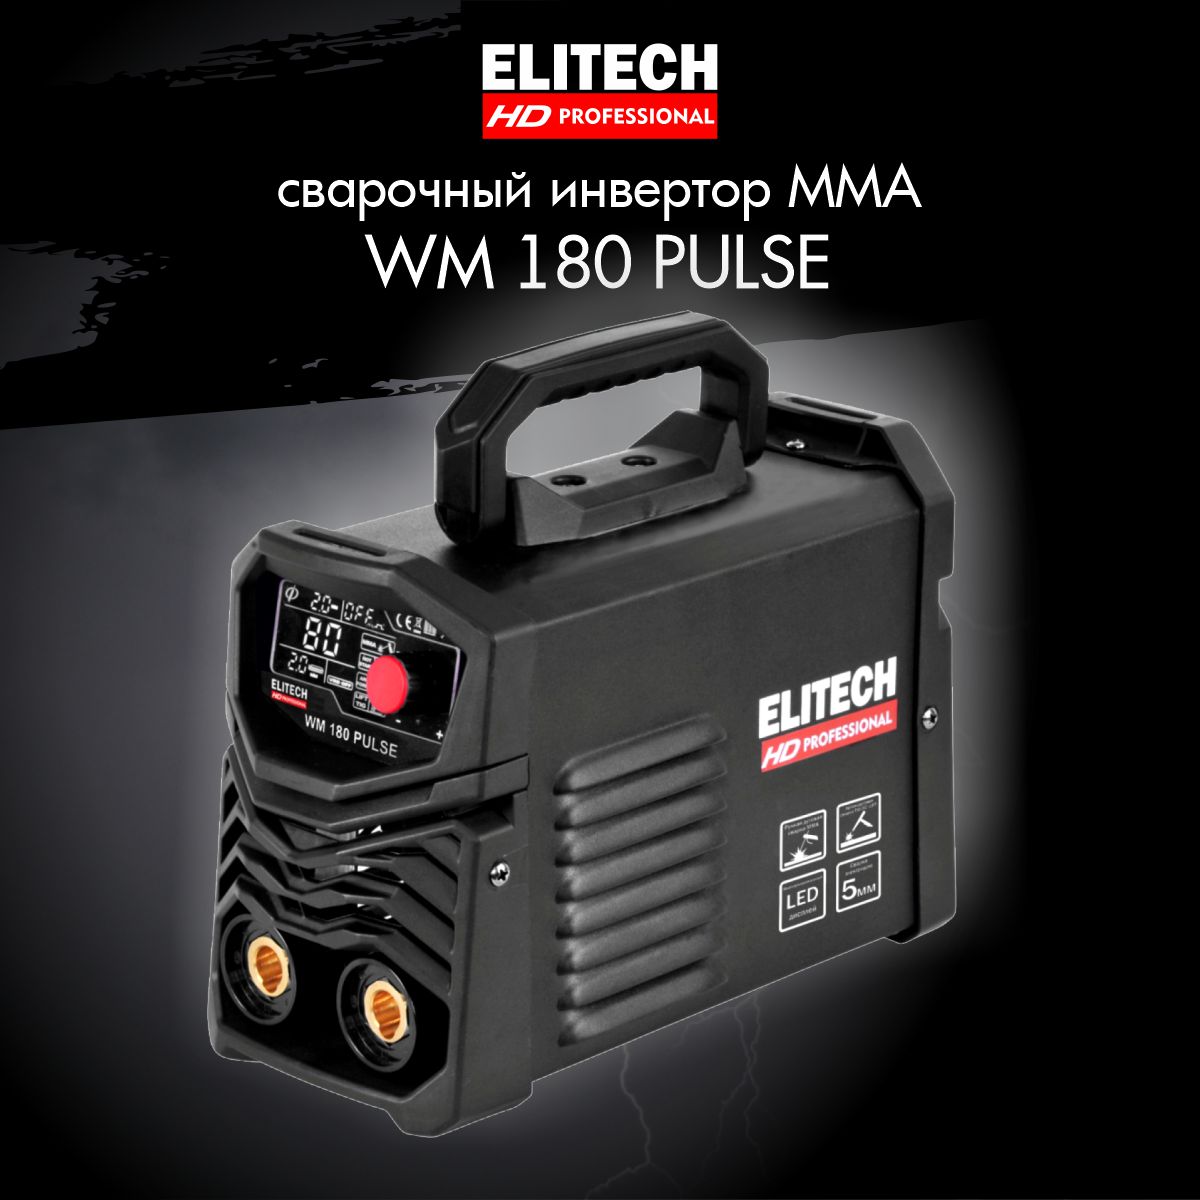 Сварочный полуавтомат ELITECH HD WM 180 Pulse сварочный аппарат инверторный elitech hd wm160 pulse 160 а до 4 мм